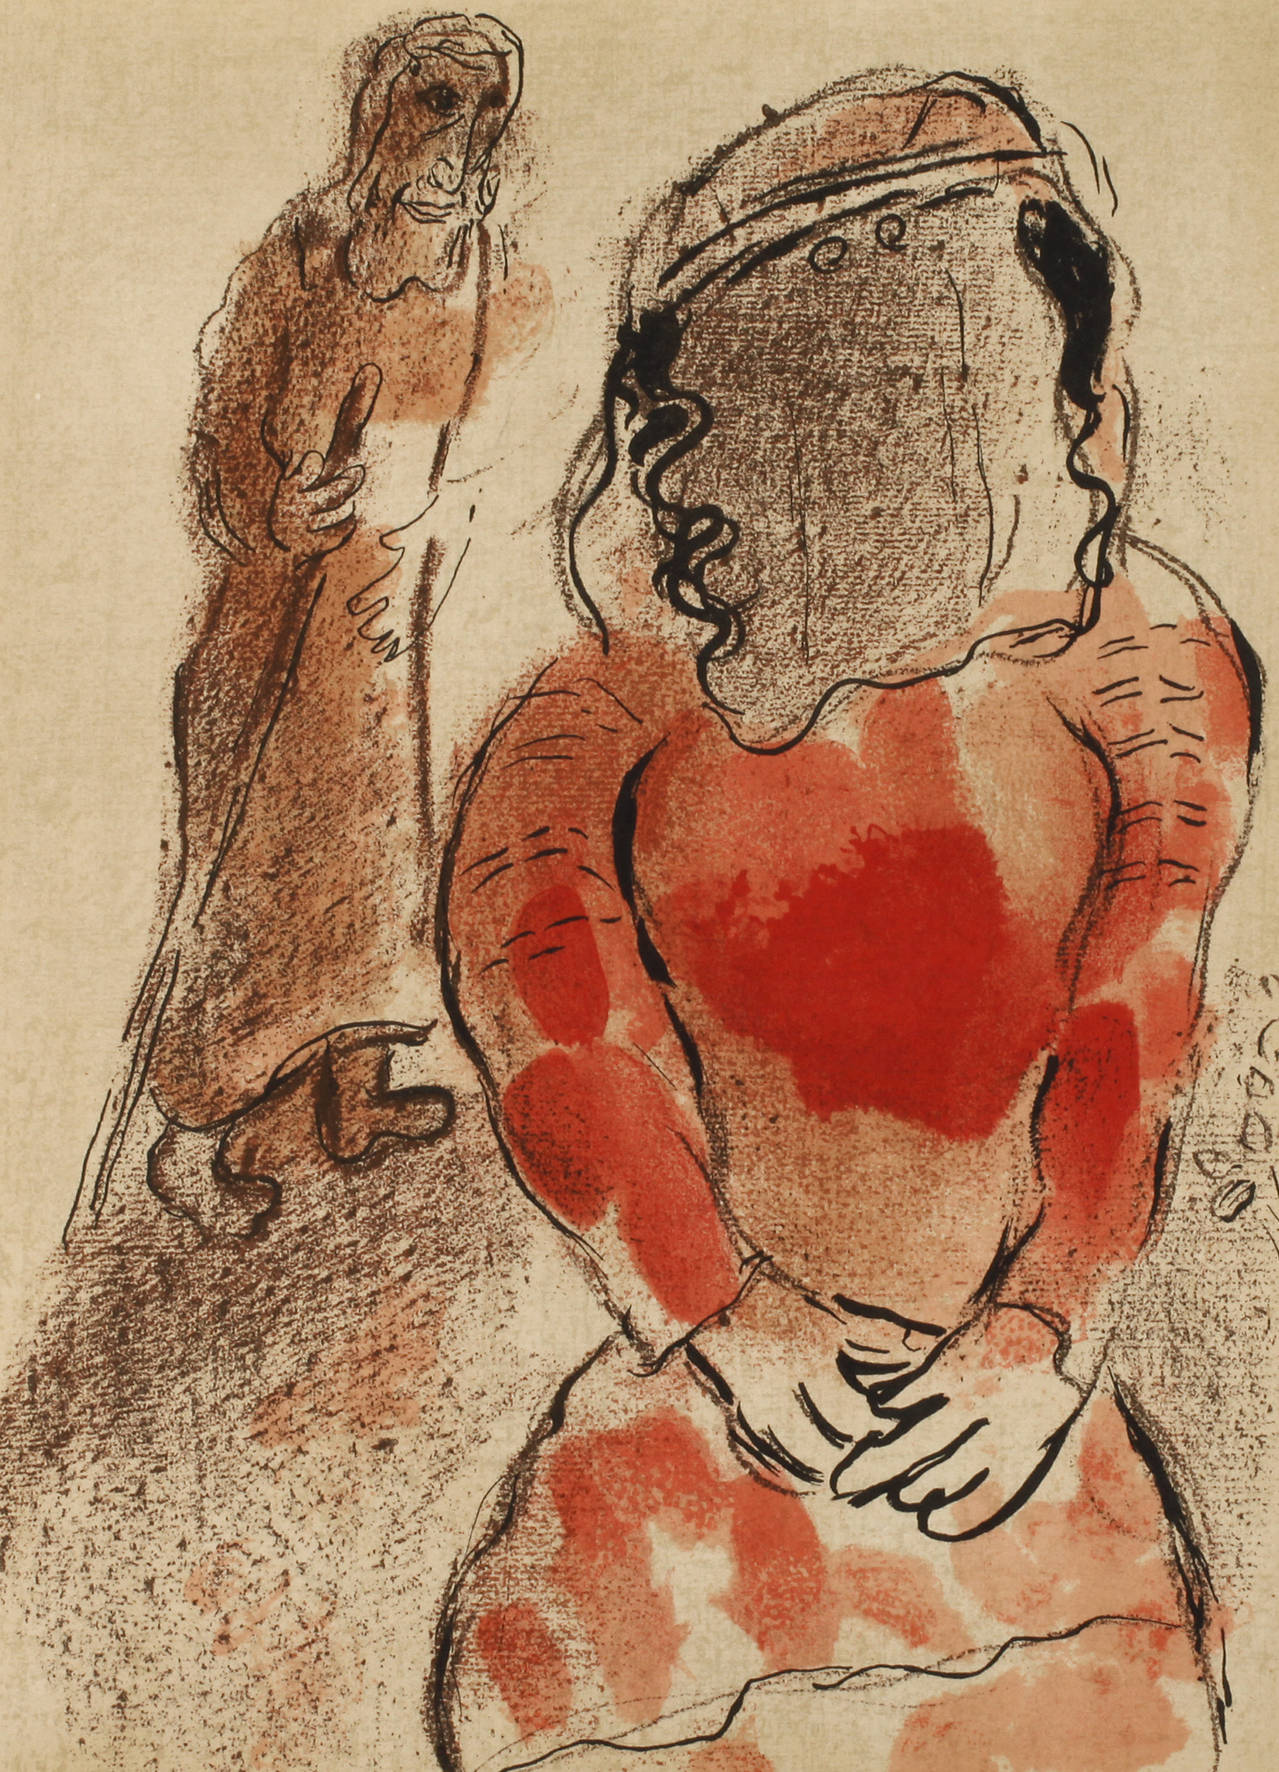 Marc Chagall, ”Thamar, die Schwiegertochter Judas”